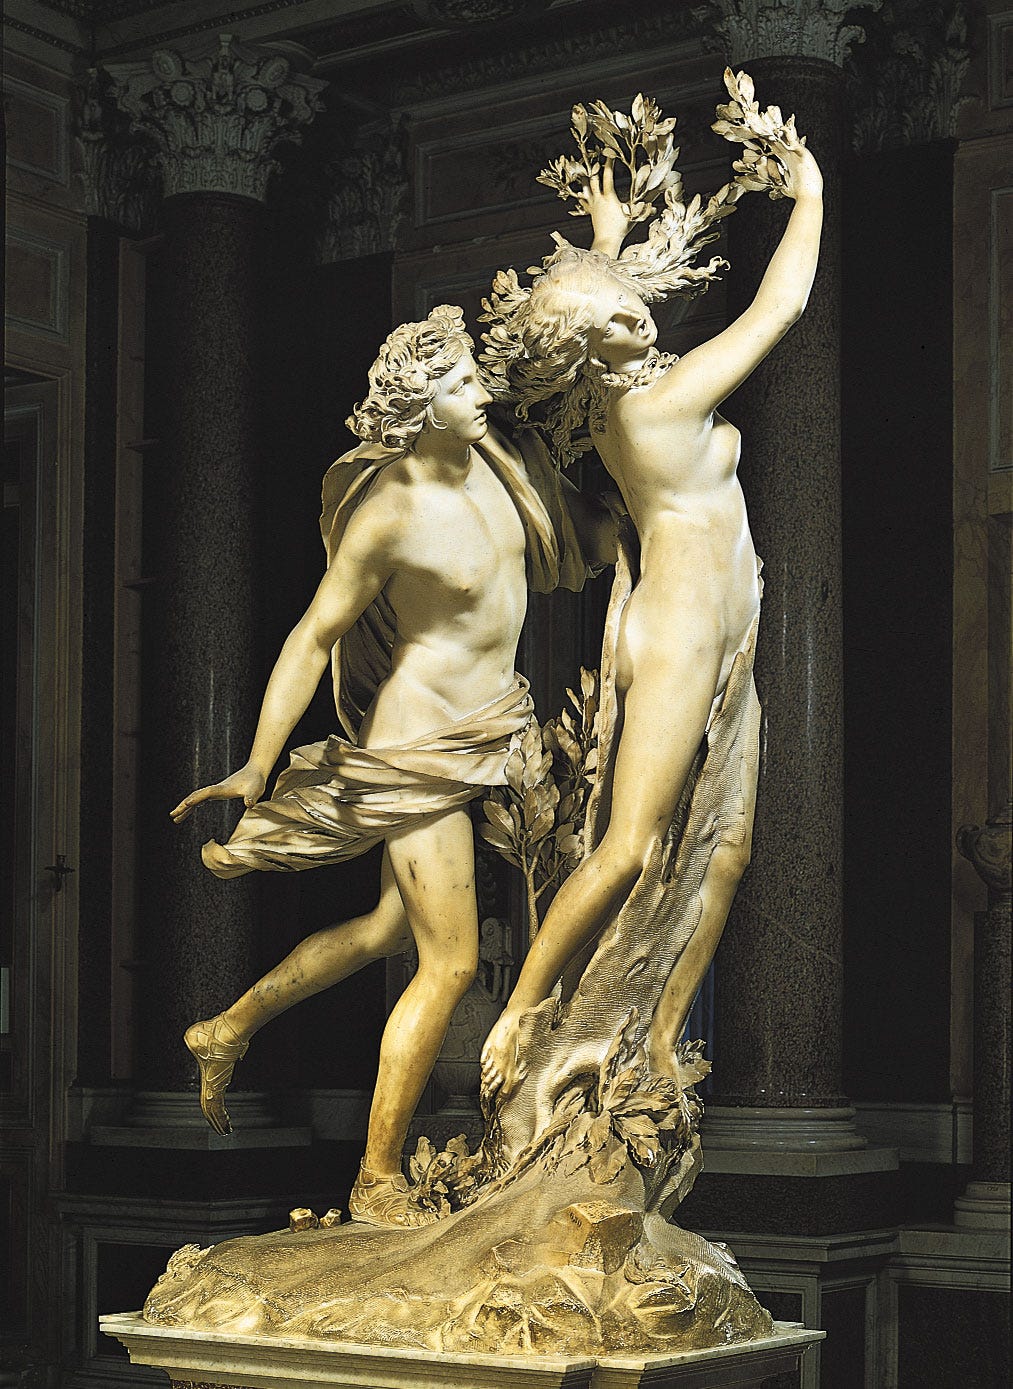 Apollo and Daphne | sculpture by Bernini | Britannica